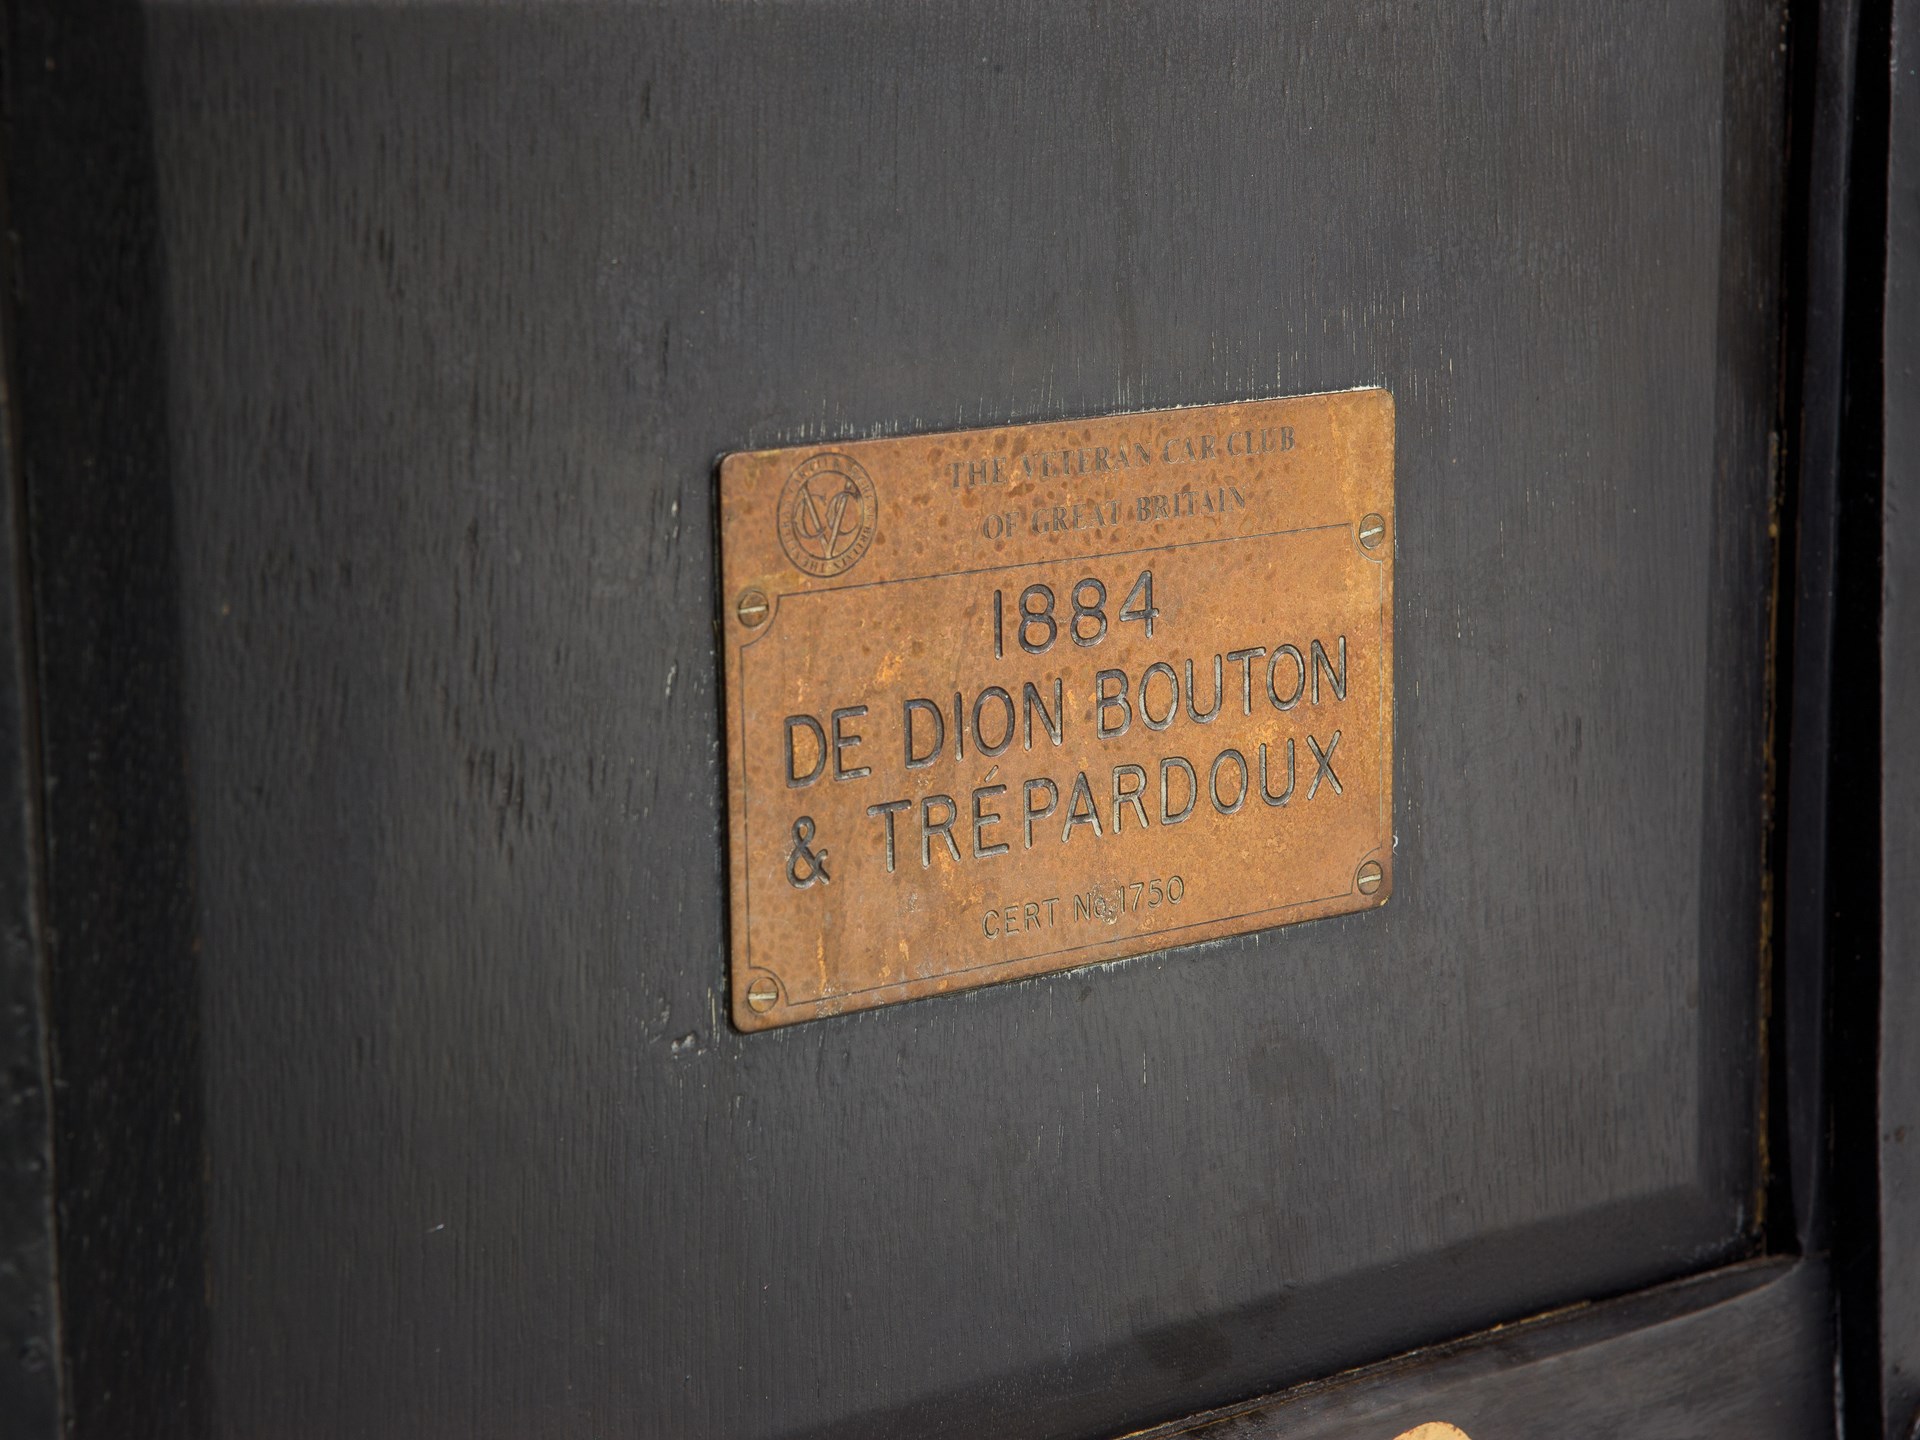 De dion bouton et trepardoux dos a dos steam runabout 1884 года фото 41